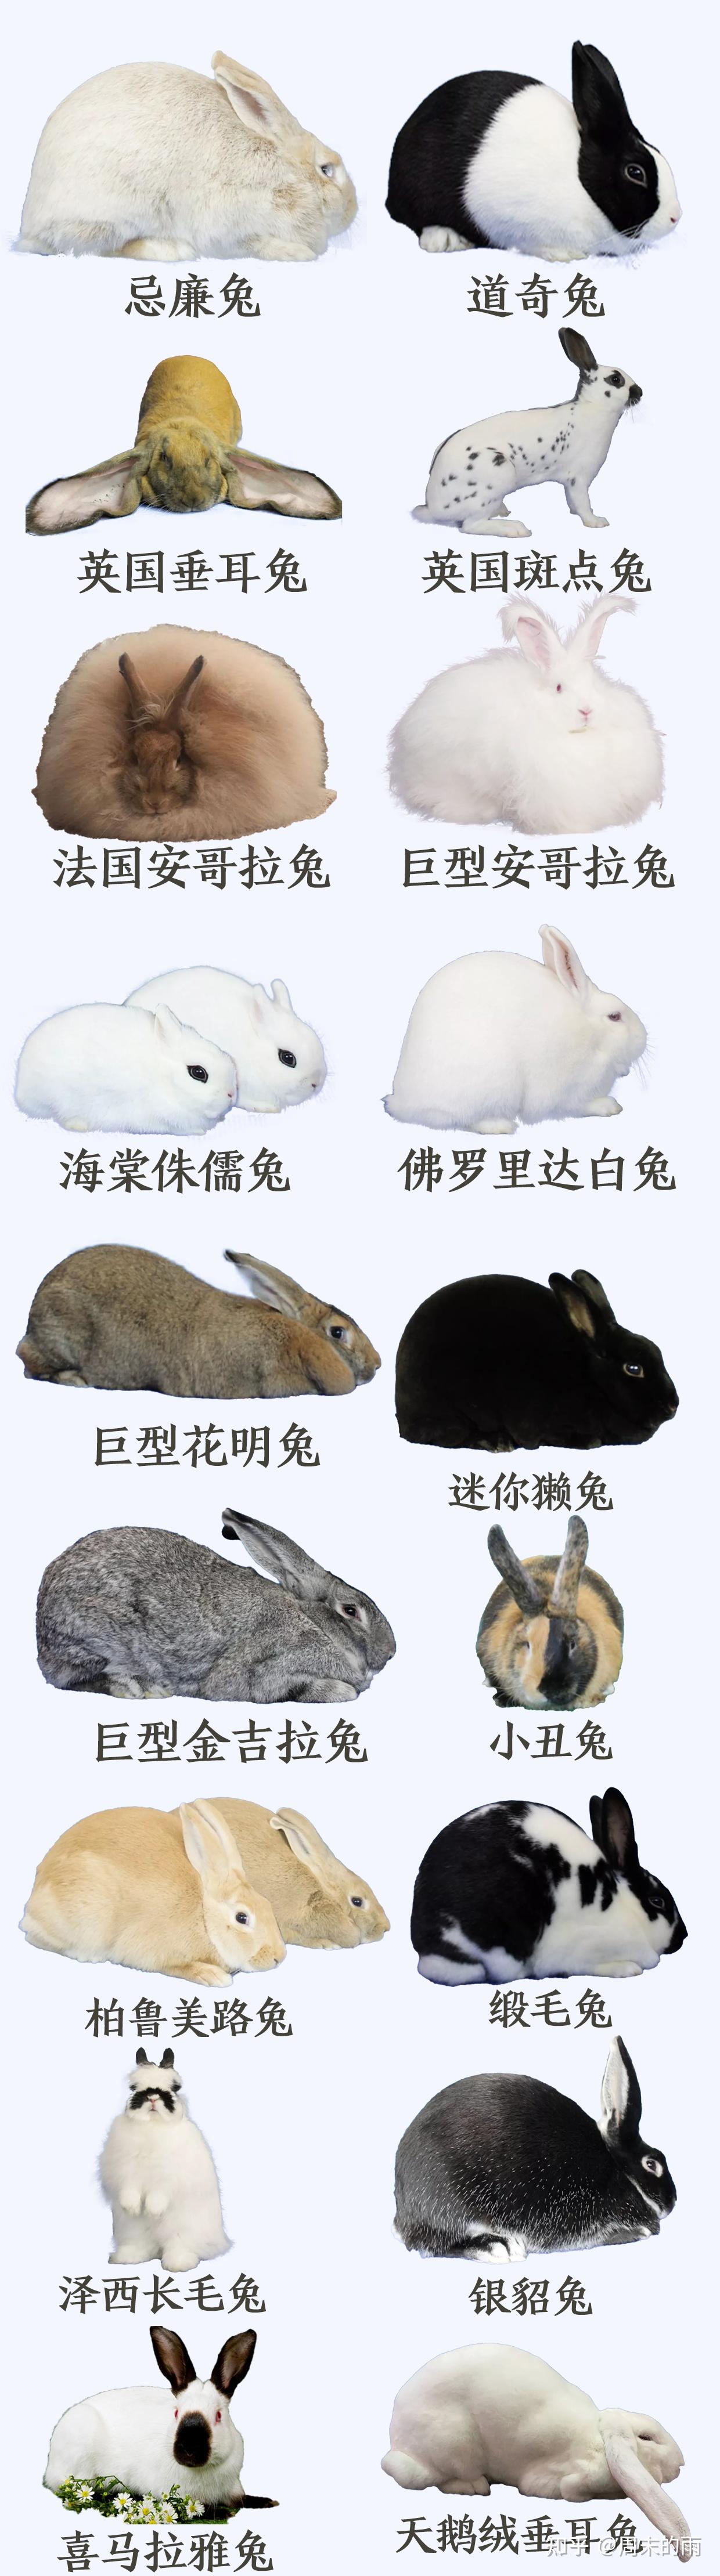 培育品种——浙系长毛兔